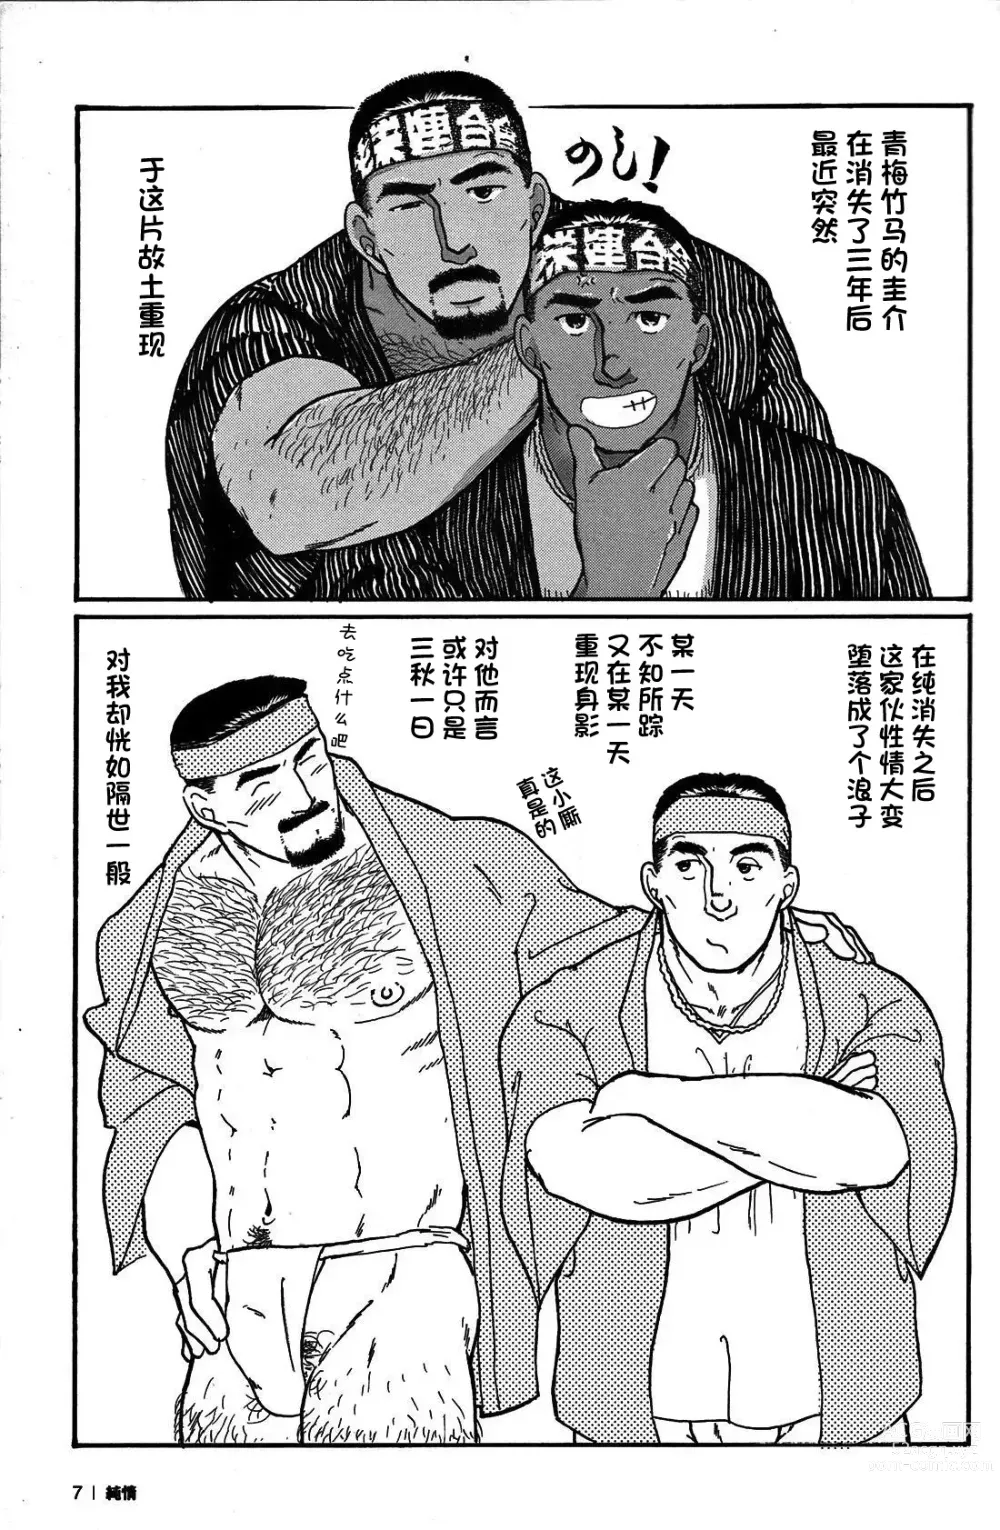 Page 6 of manga 纯情-第一章-纯情!!